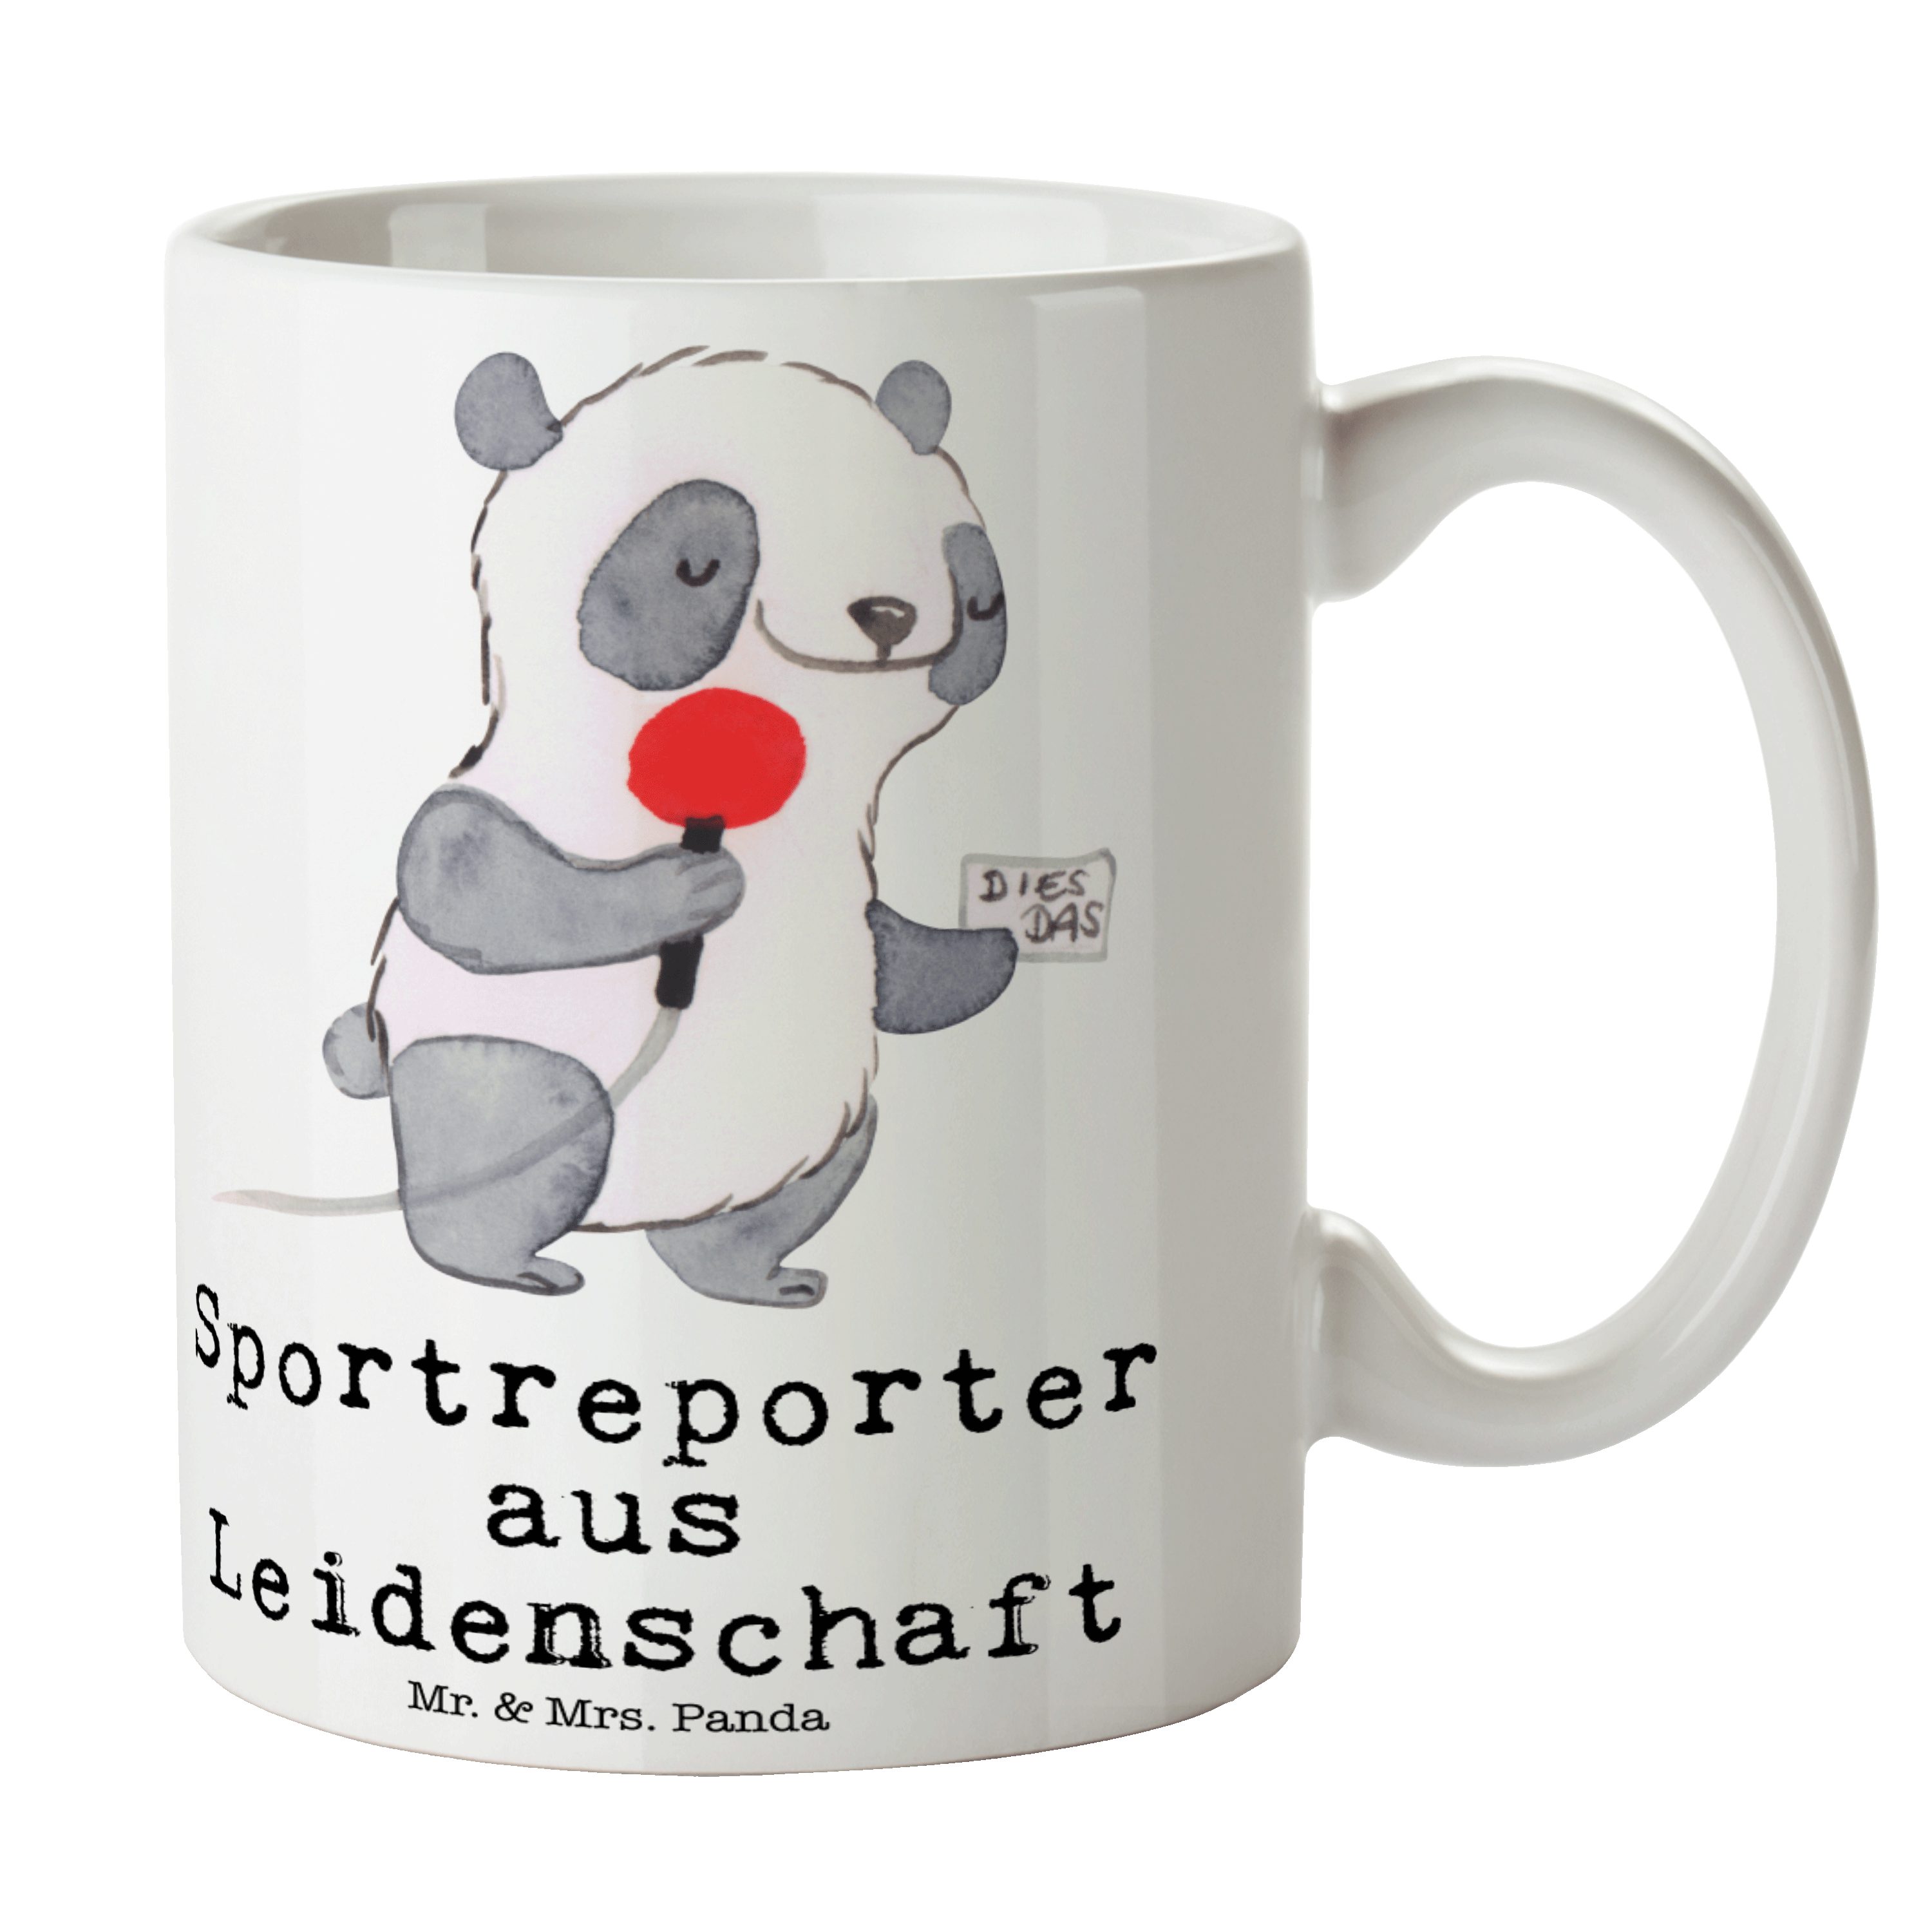 Arbeitskollege, Tas, Panda Leidenschaft aus Sportreporter Mr. - Weiß Keramik Tasse Geschenk, & - Mrs.